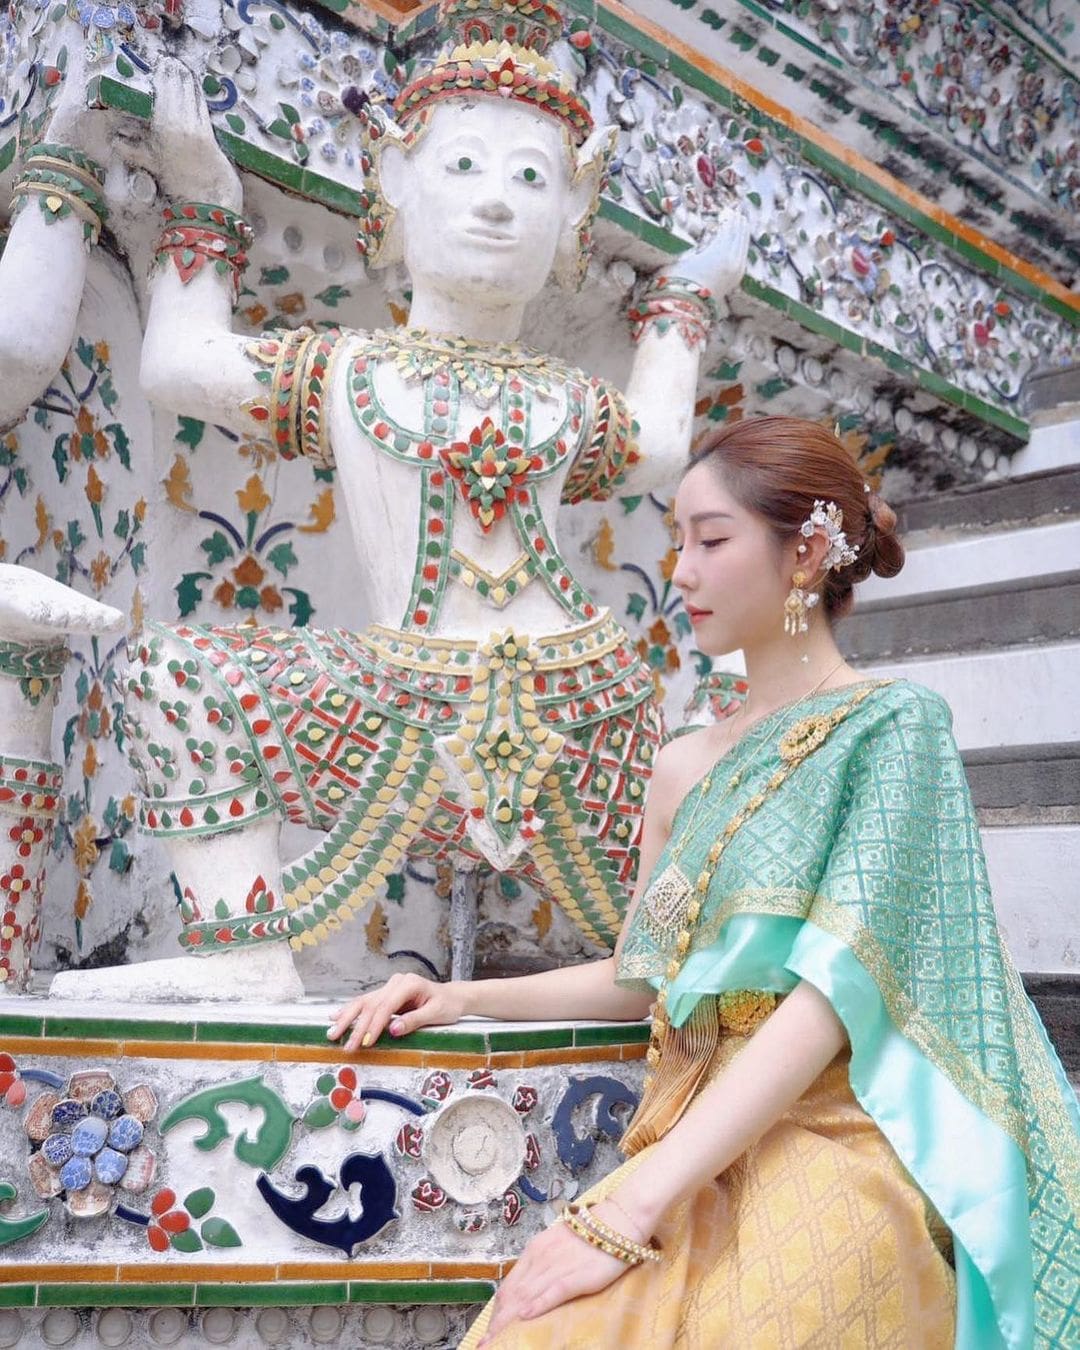 泰國傳統民族服裝：「泰西合璧」的文化融合風貌（下） - 第 1 頁 - The News Lens 關鍵評論網